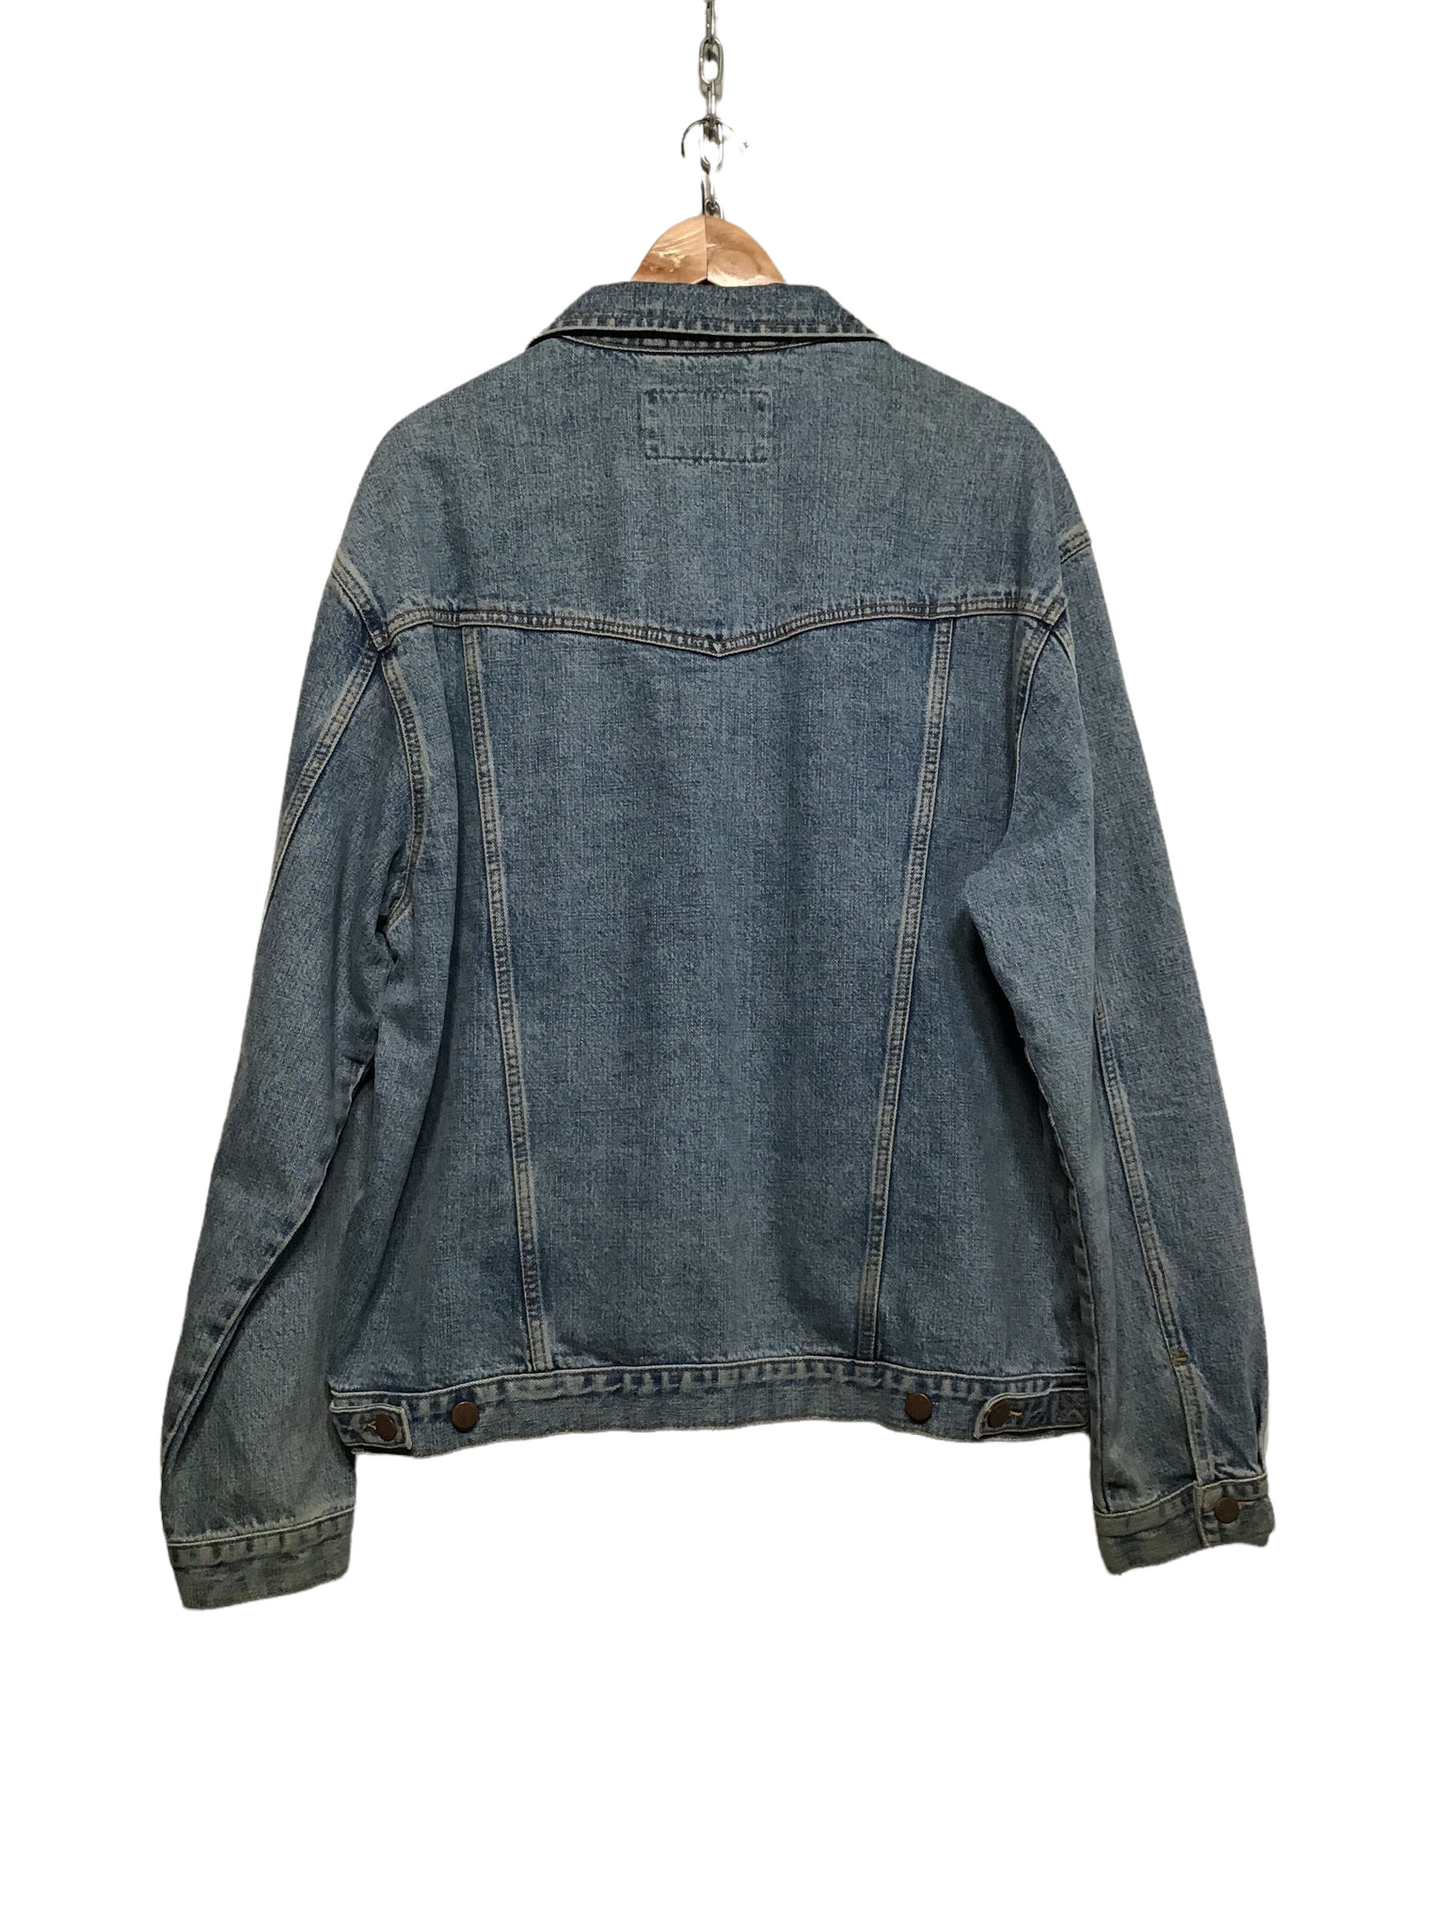 Wrangler Denim Jacket (Size XXL)